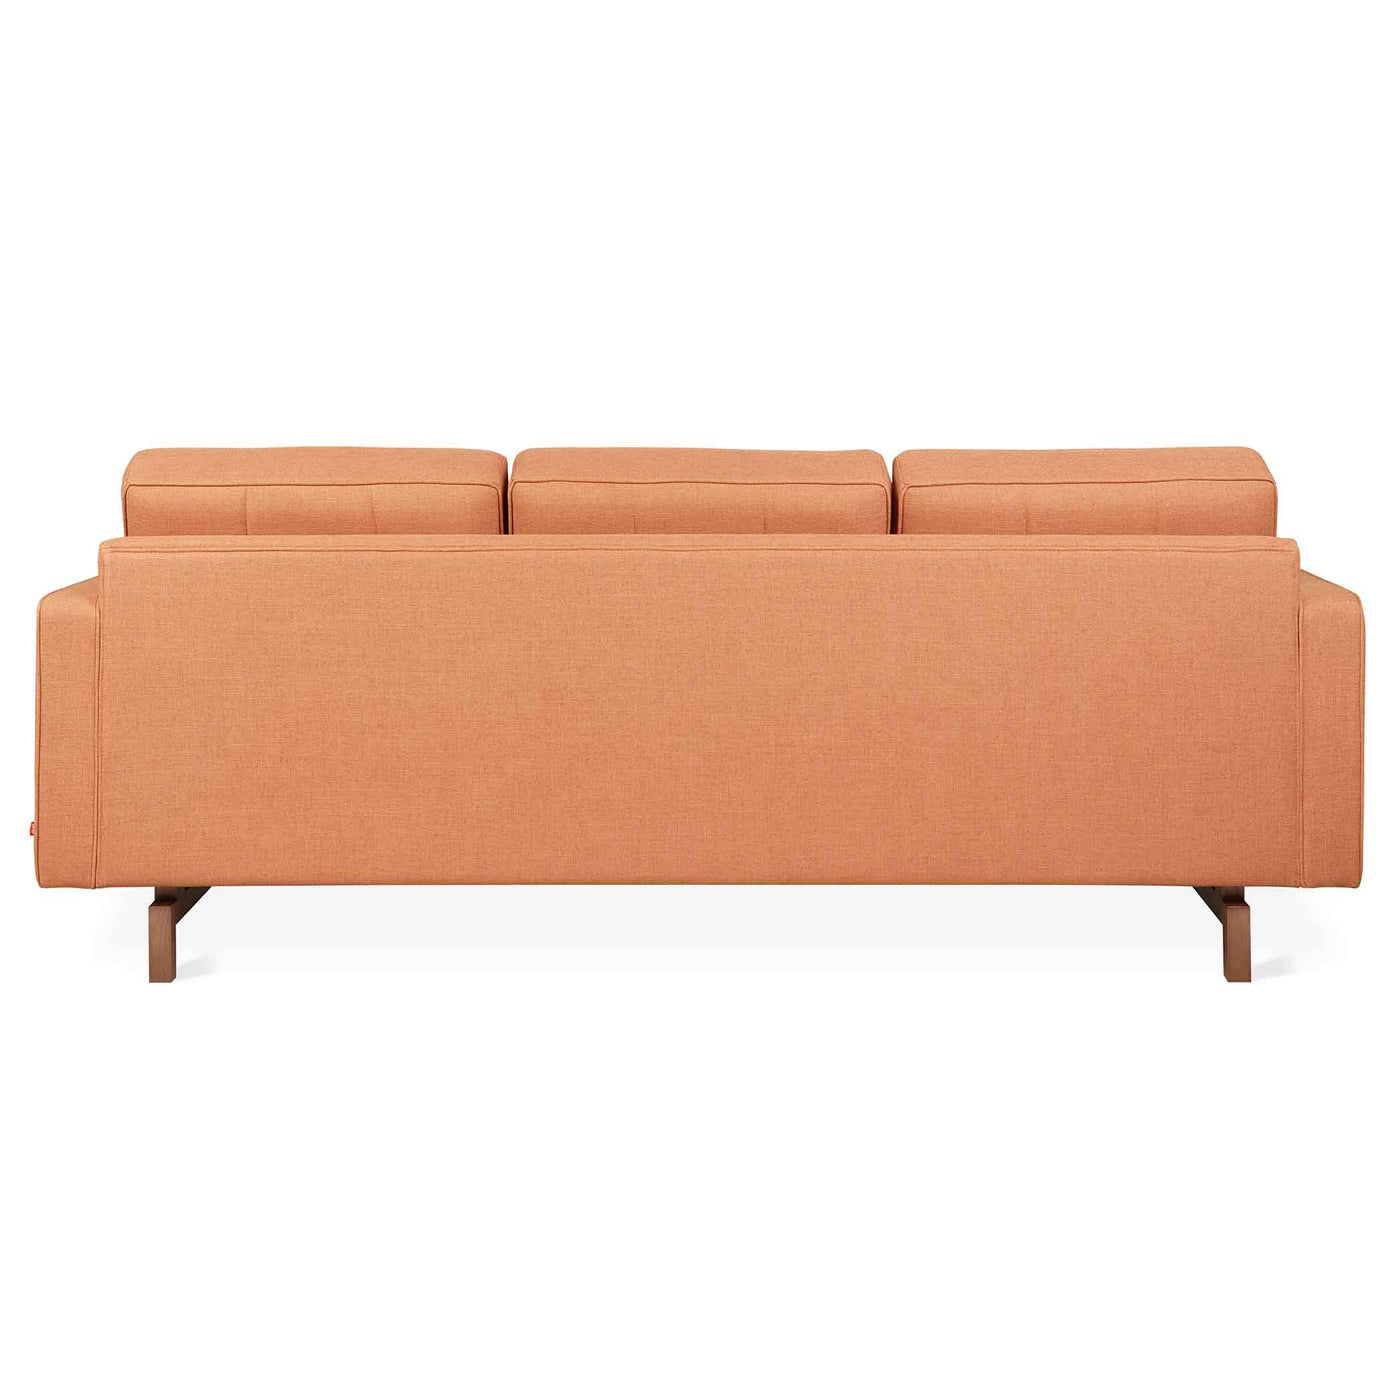 Jane 2 de Gus* Modern : un sofa élégant et polyvalent, offrant une configuration astucieuse avec le Lounge pour répondre à vos besoins de design.